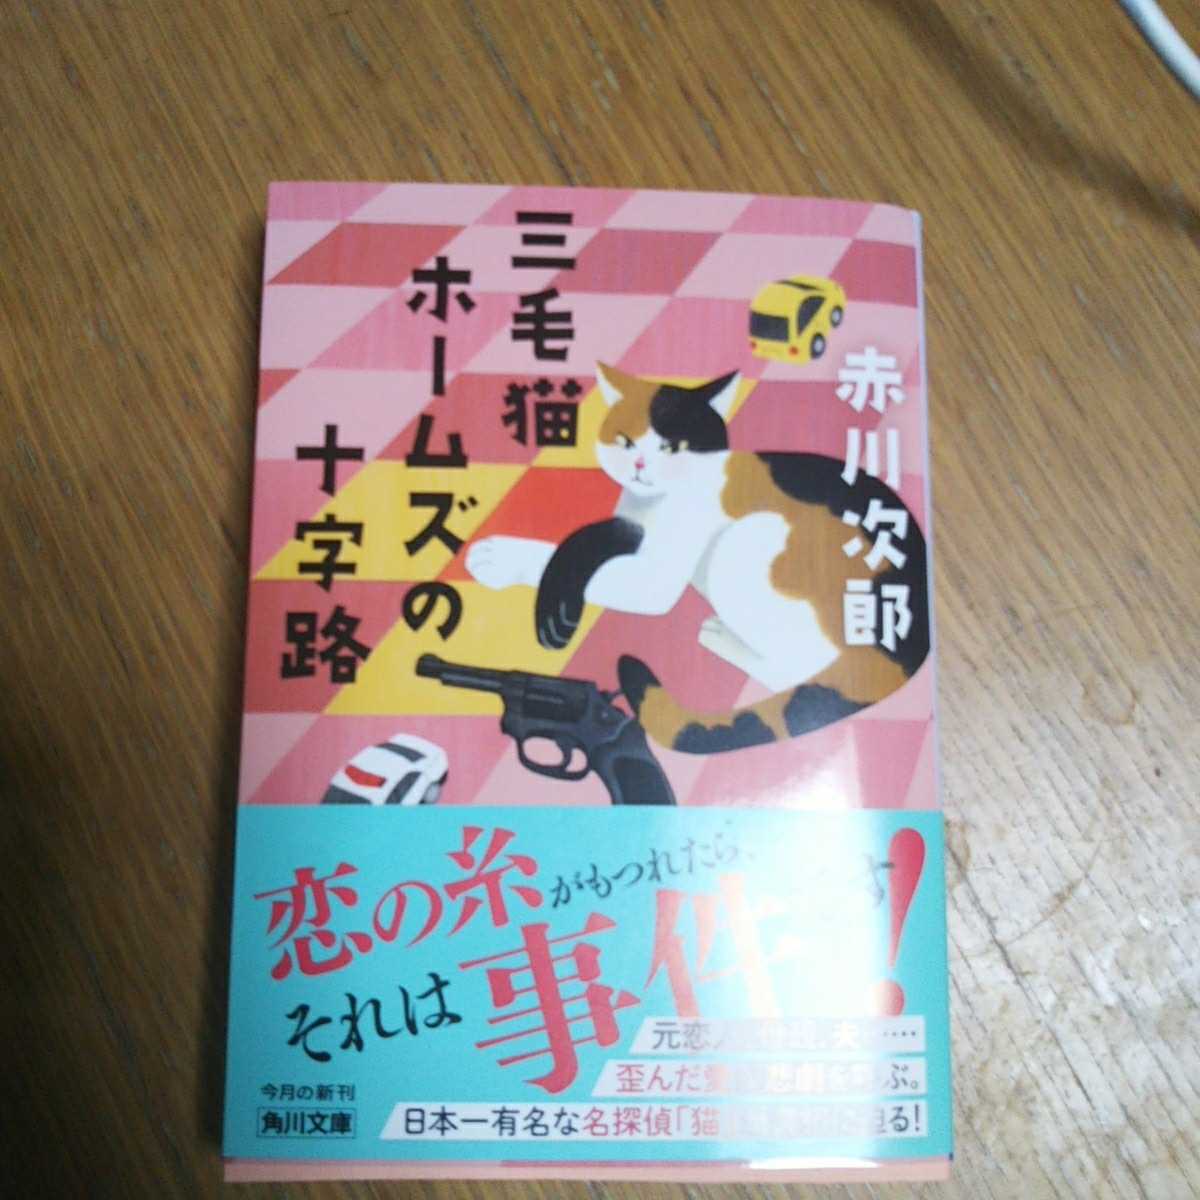  б/у библиотека книга@ Akagawa Jiro три шерсть кошка Home z. 10 знак .